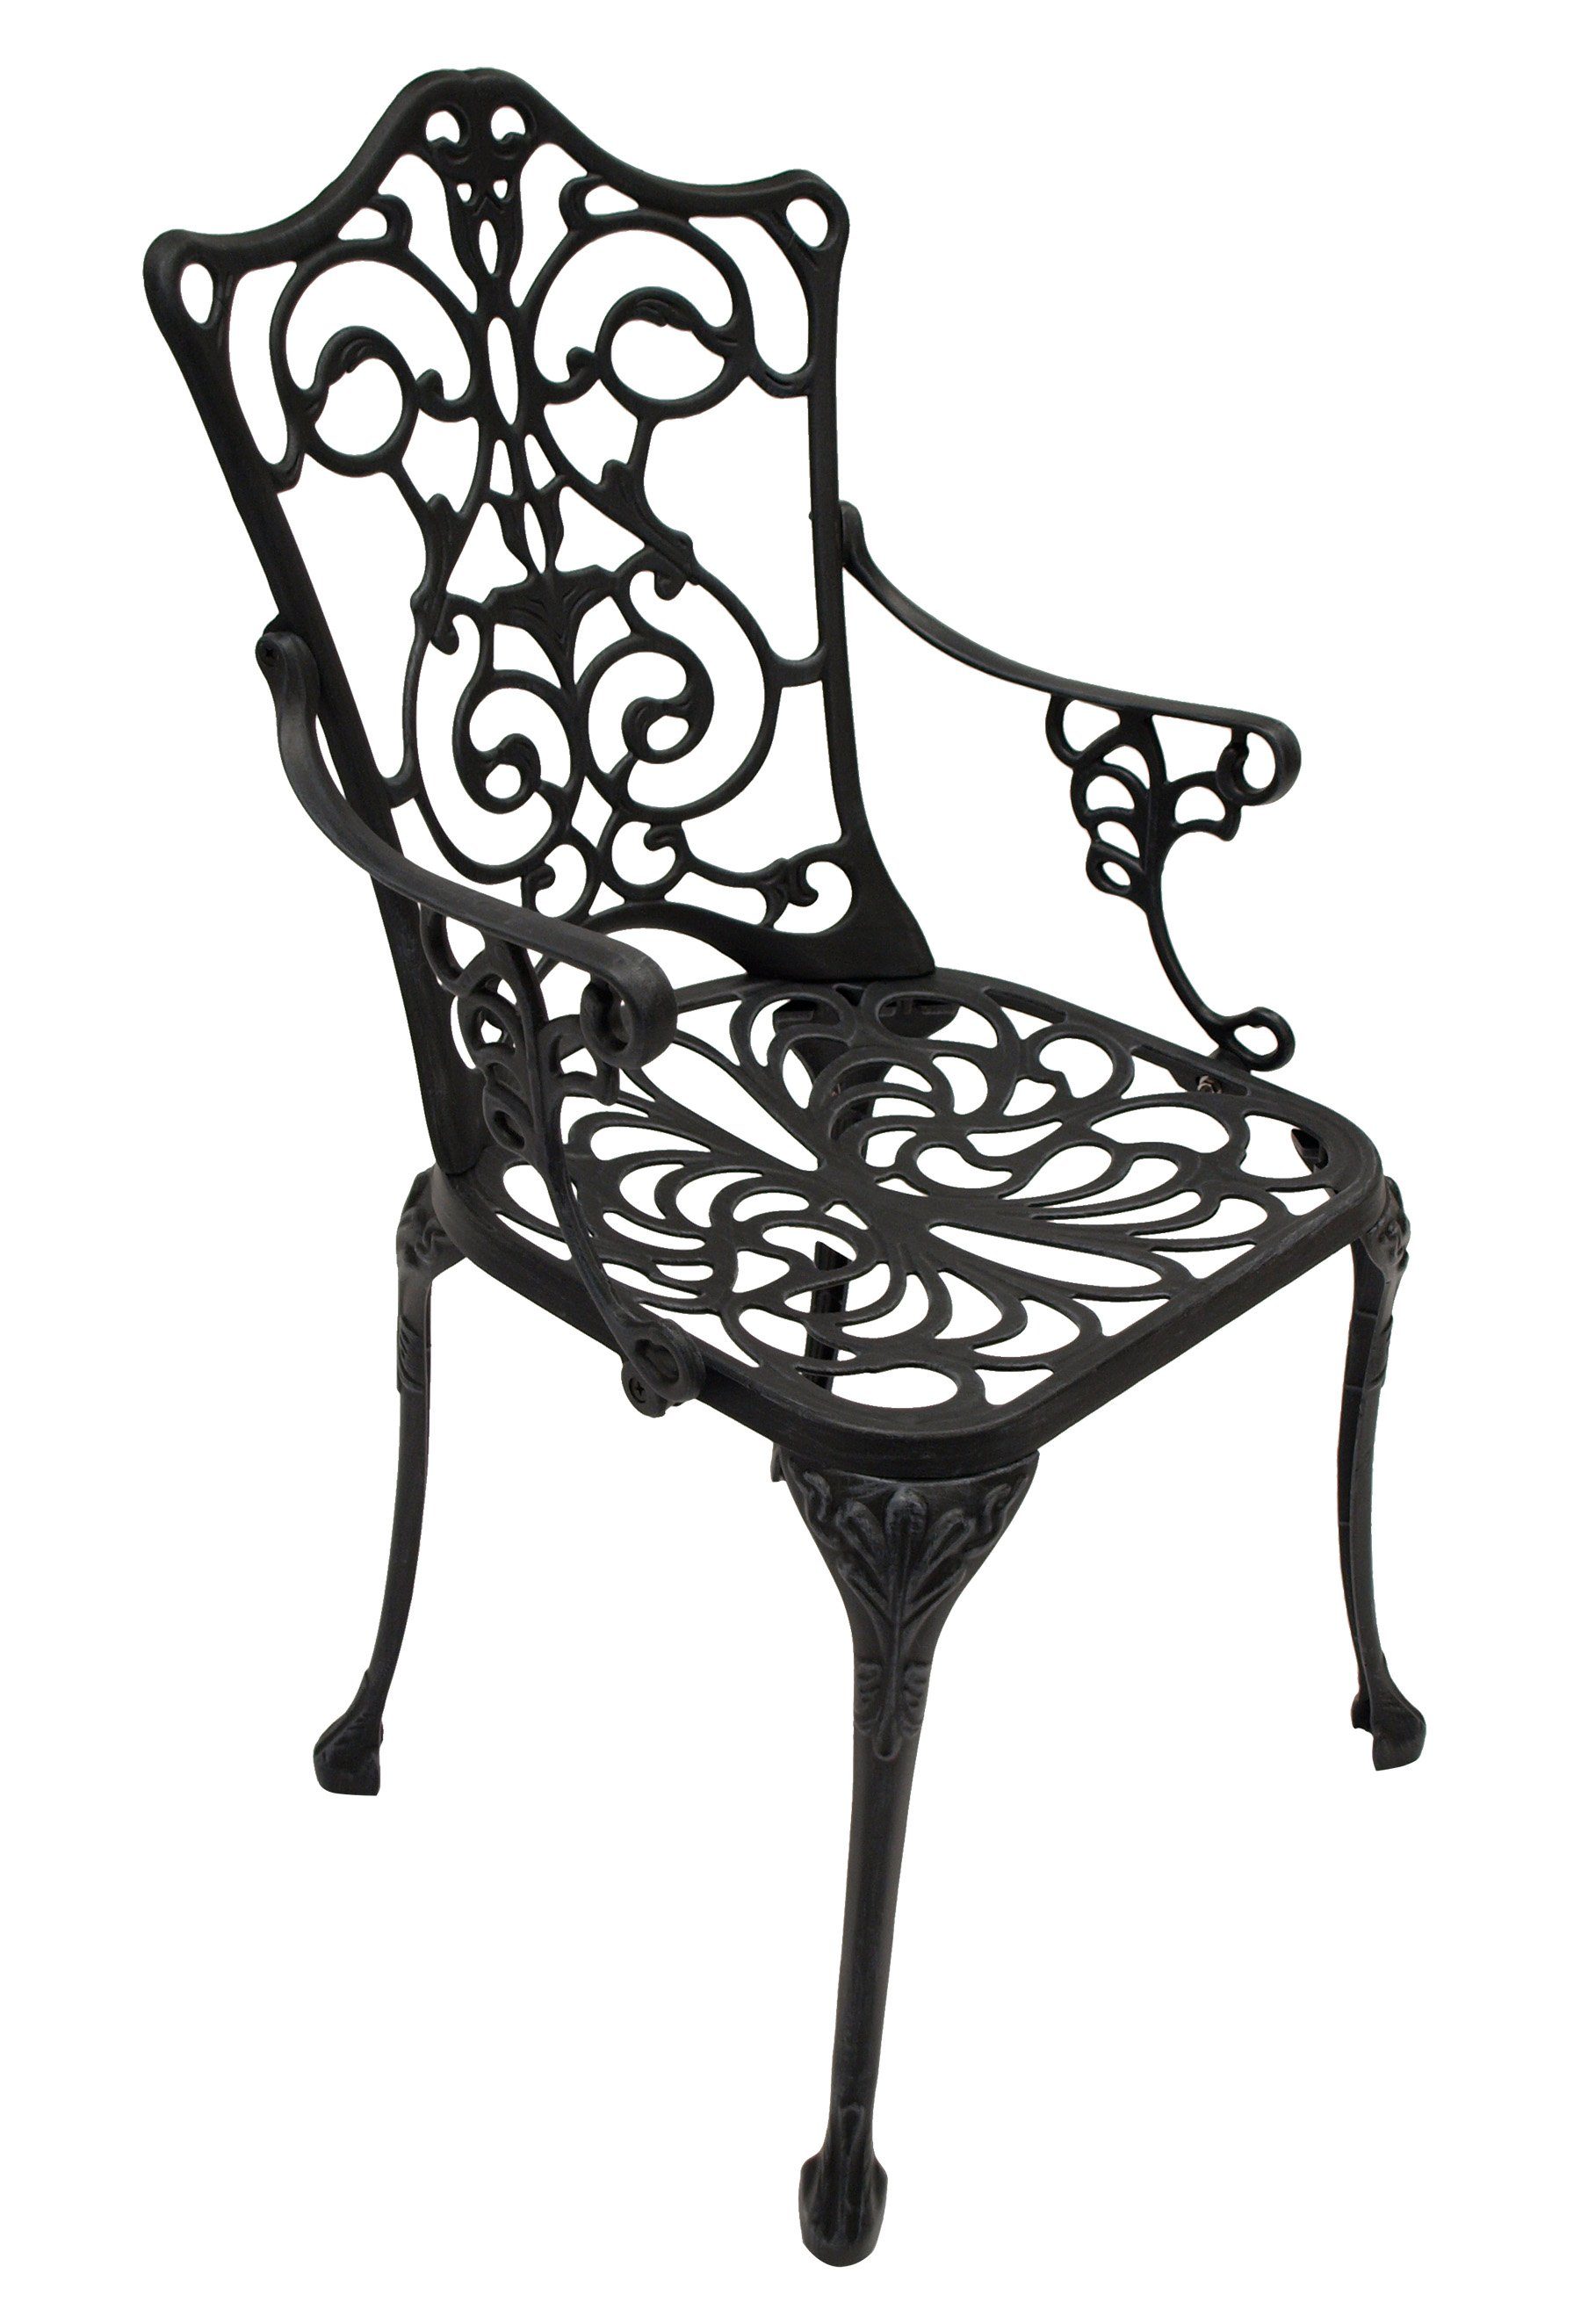 (1-St), rostfrei DEGAMO Jugendstil Gartensessel grau-antik, Aluguss Farbe